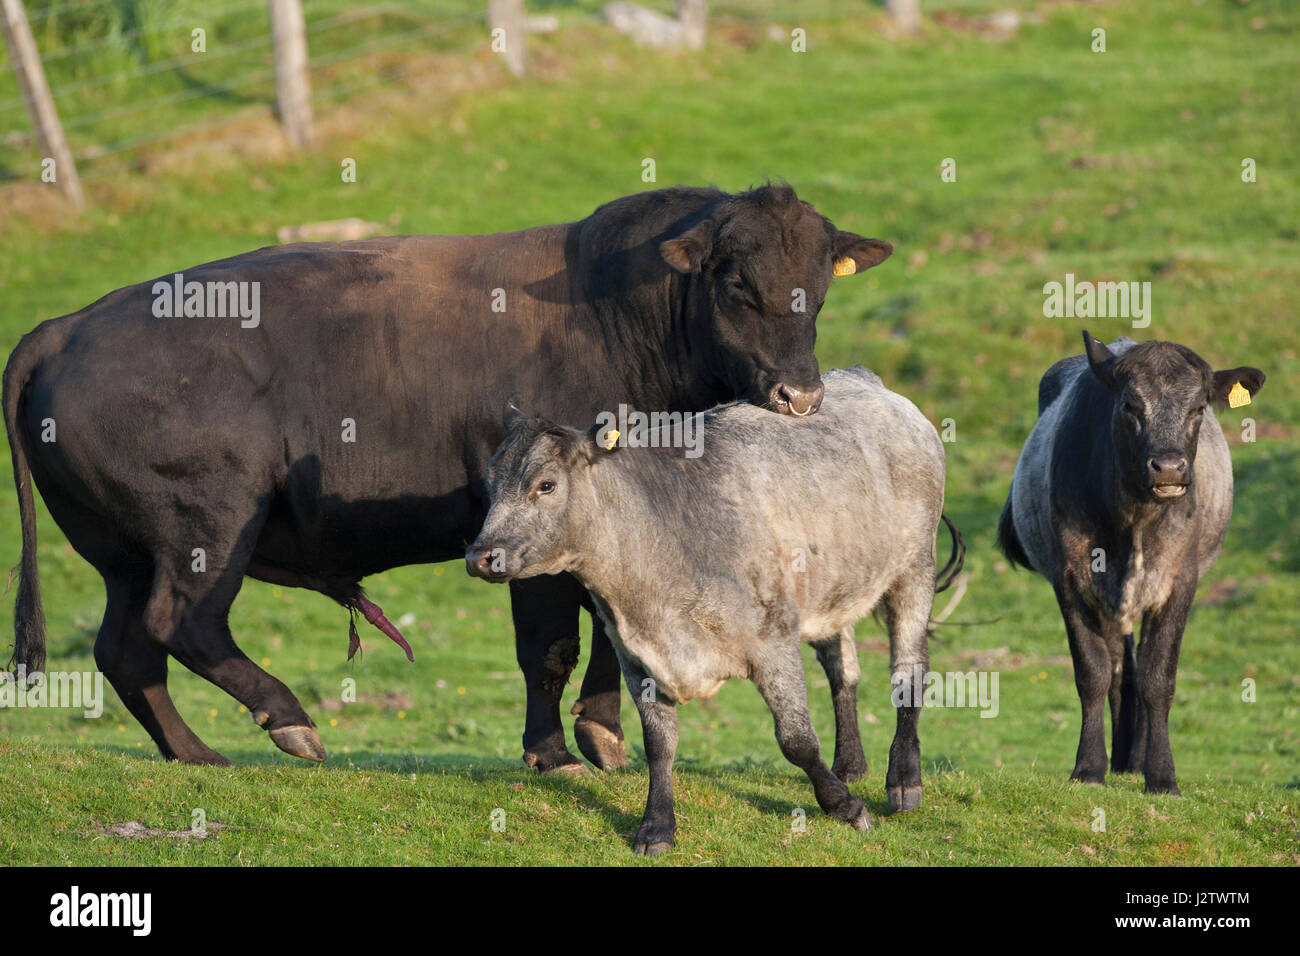 El ganado vacuno, solo adulto Aberdeen Angus bull intenta montar hembra, Aviemore, Escocia, Reino Unido Foto de stock